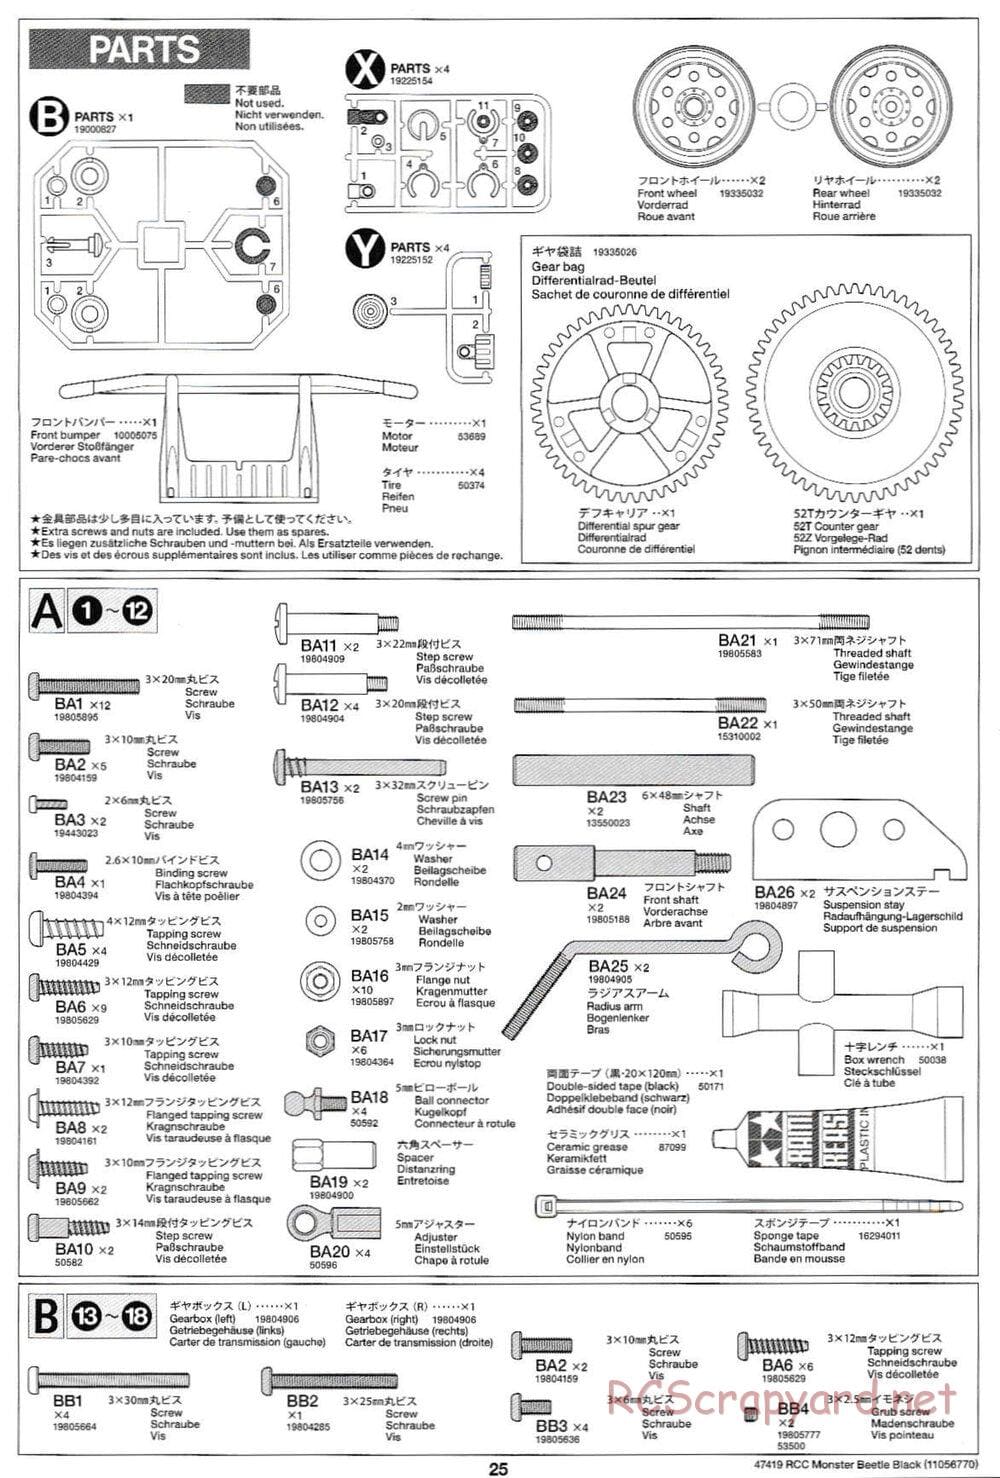 Tamiya - Monster Beetle Black Edition - ORV Chassis - Manual - Page 25